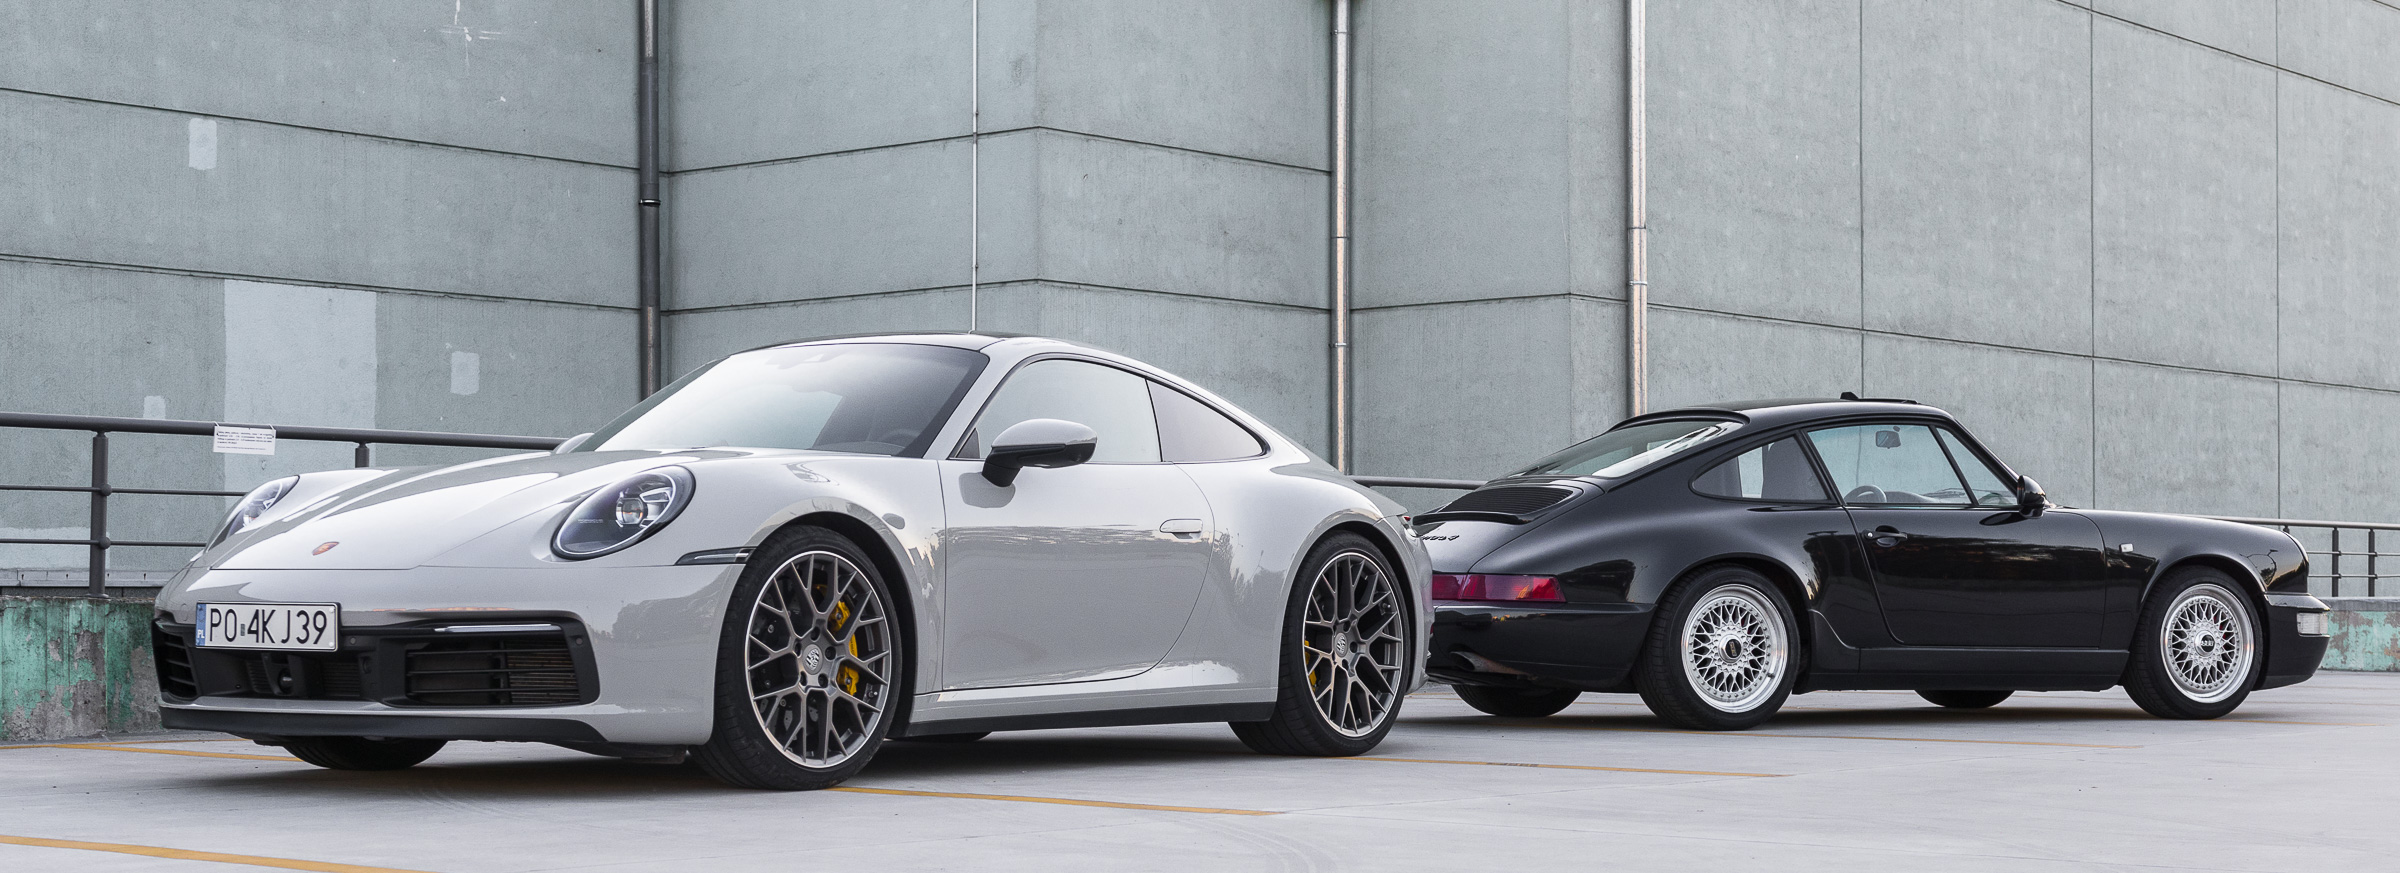 Porsche 911 992 test 2019